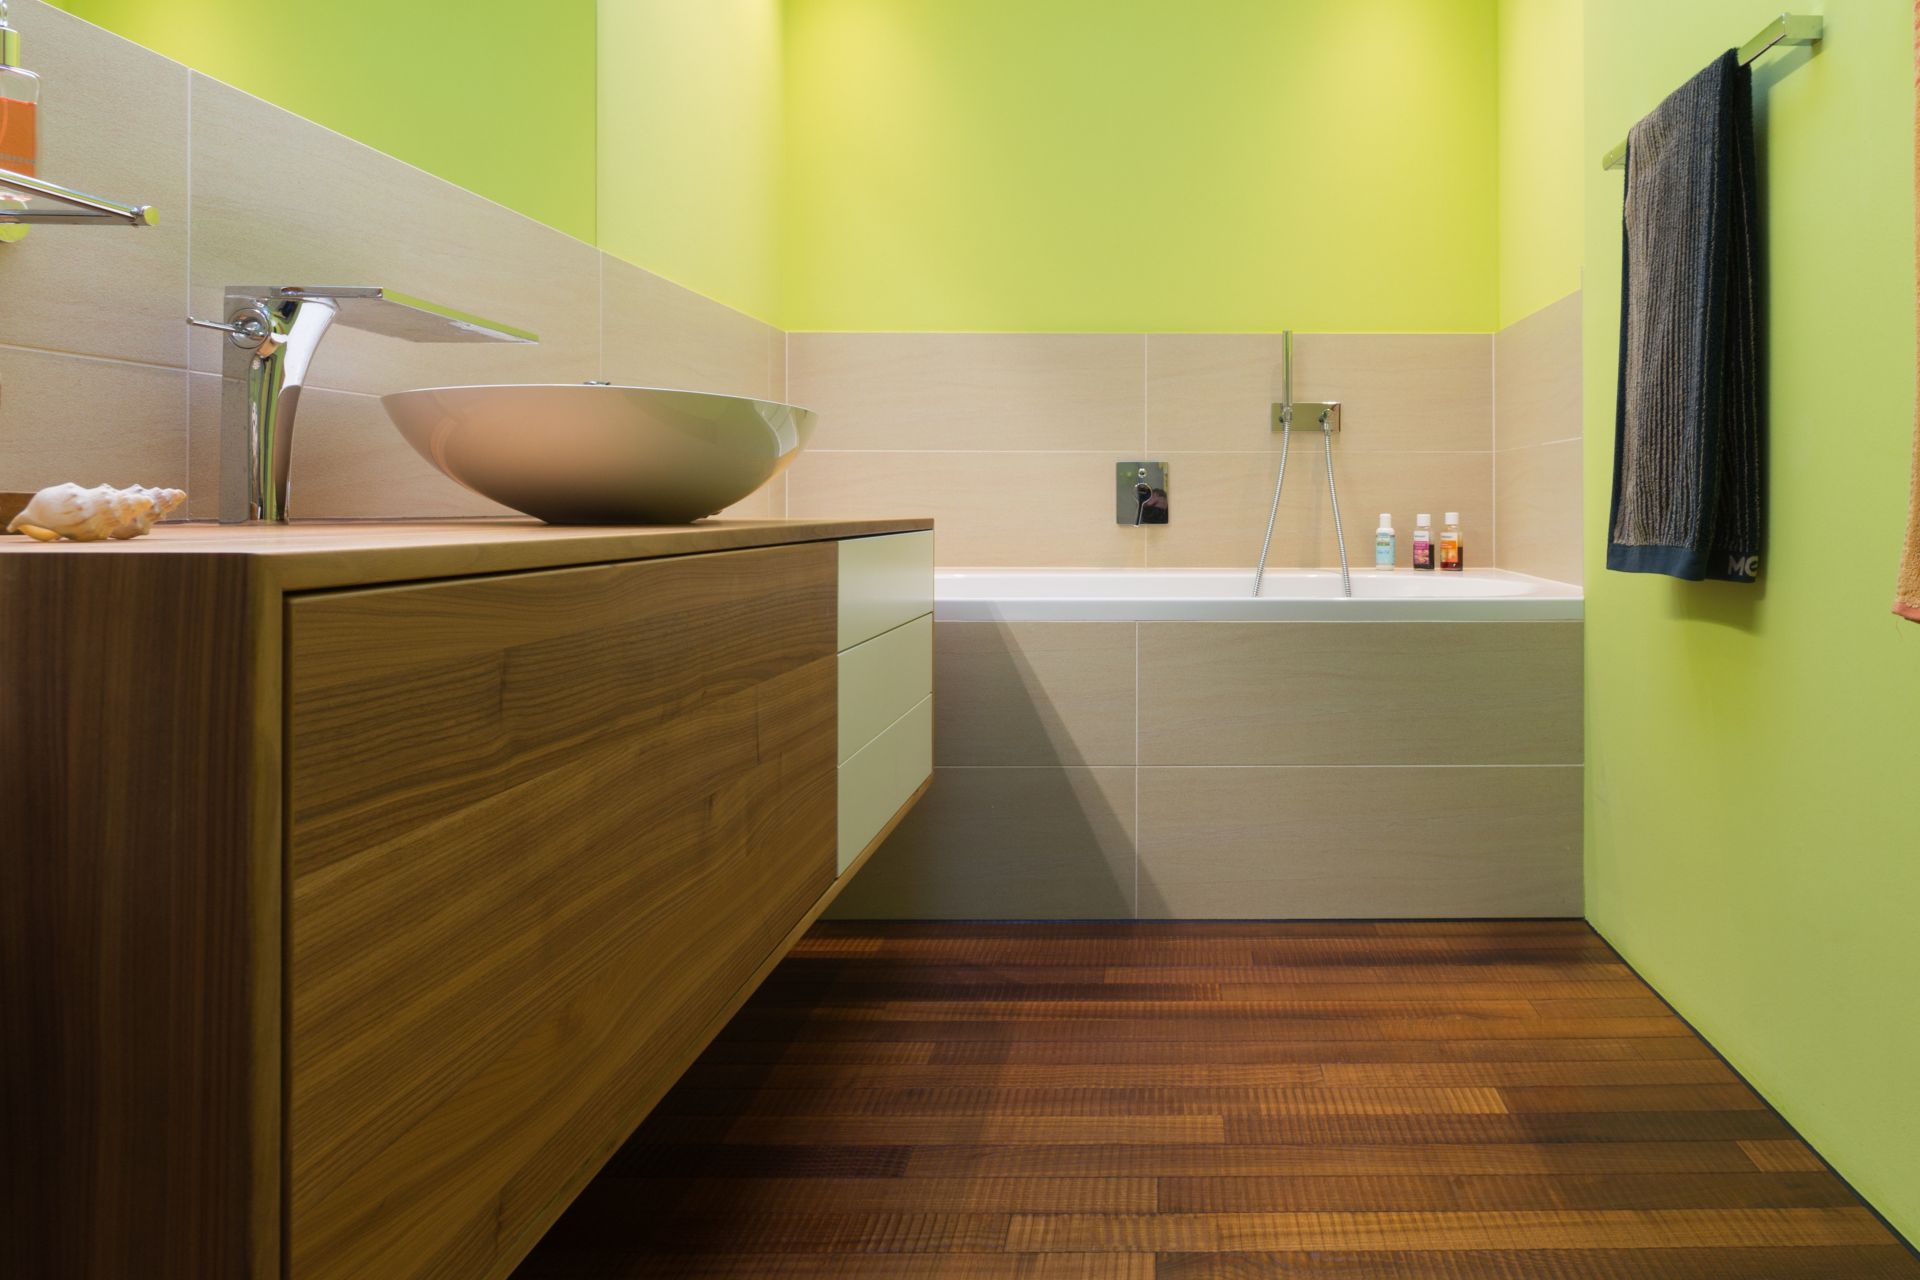 Holz erzeugt eine gemütliche, stilvolle Atmosphäre im Bad